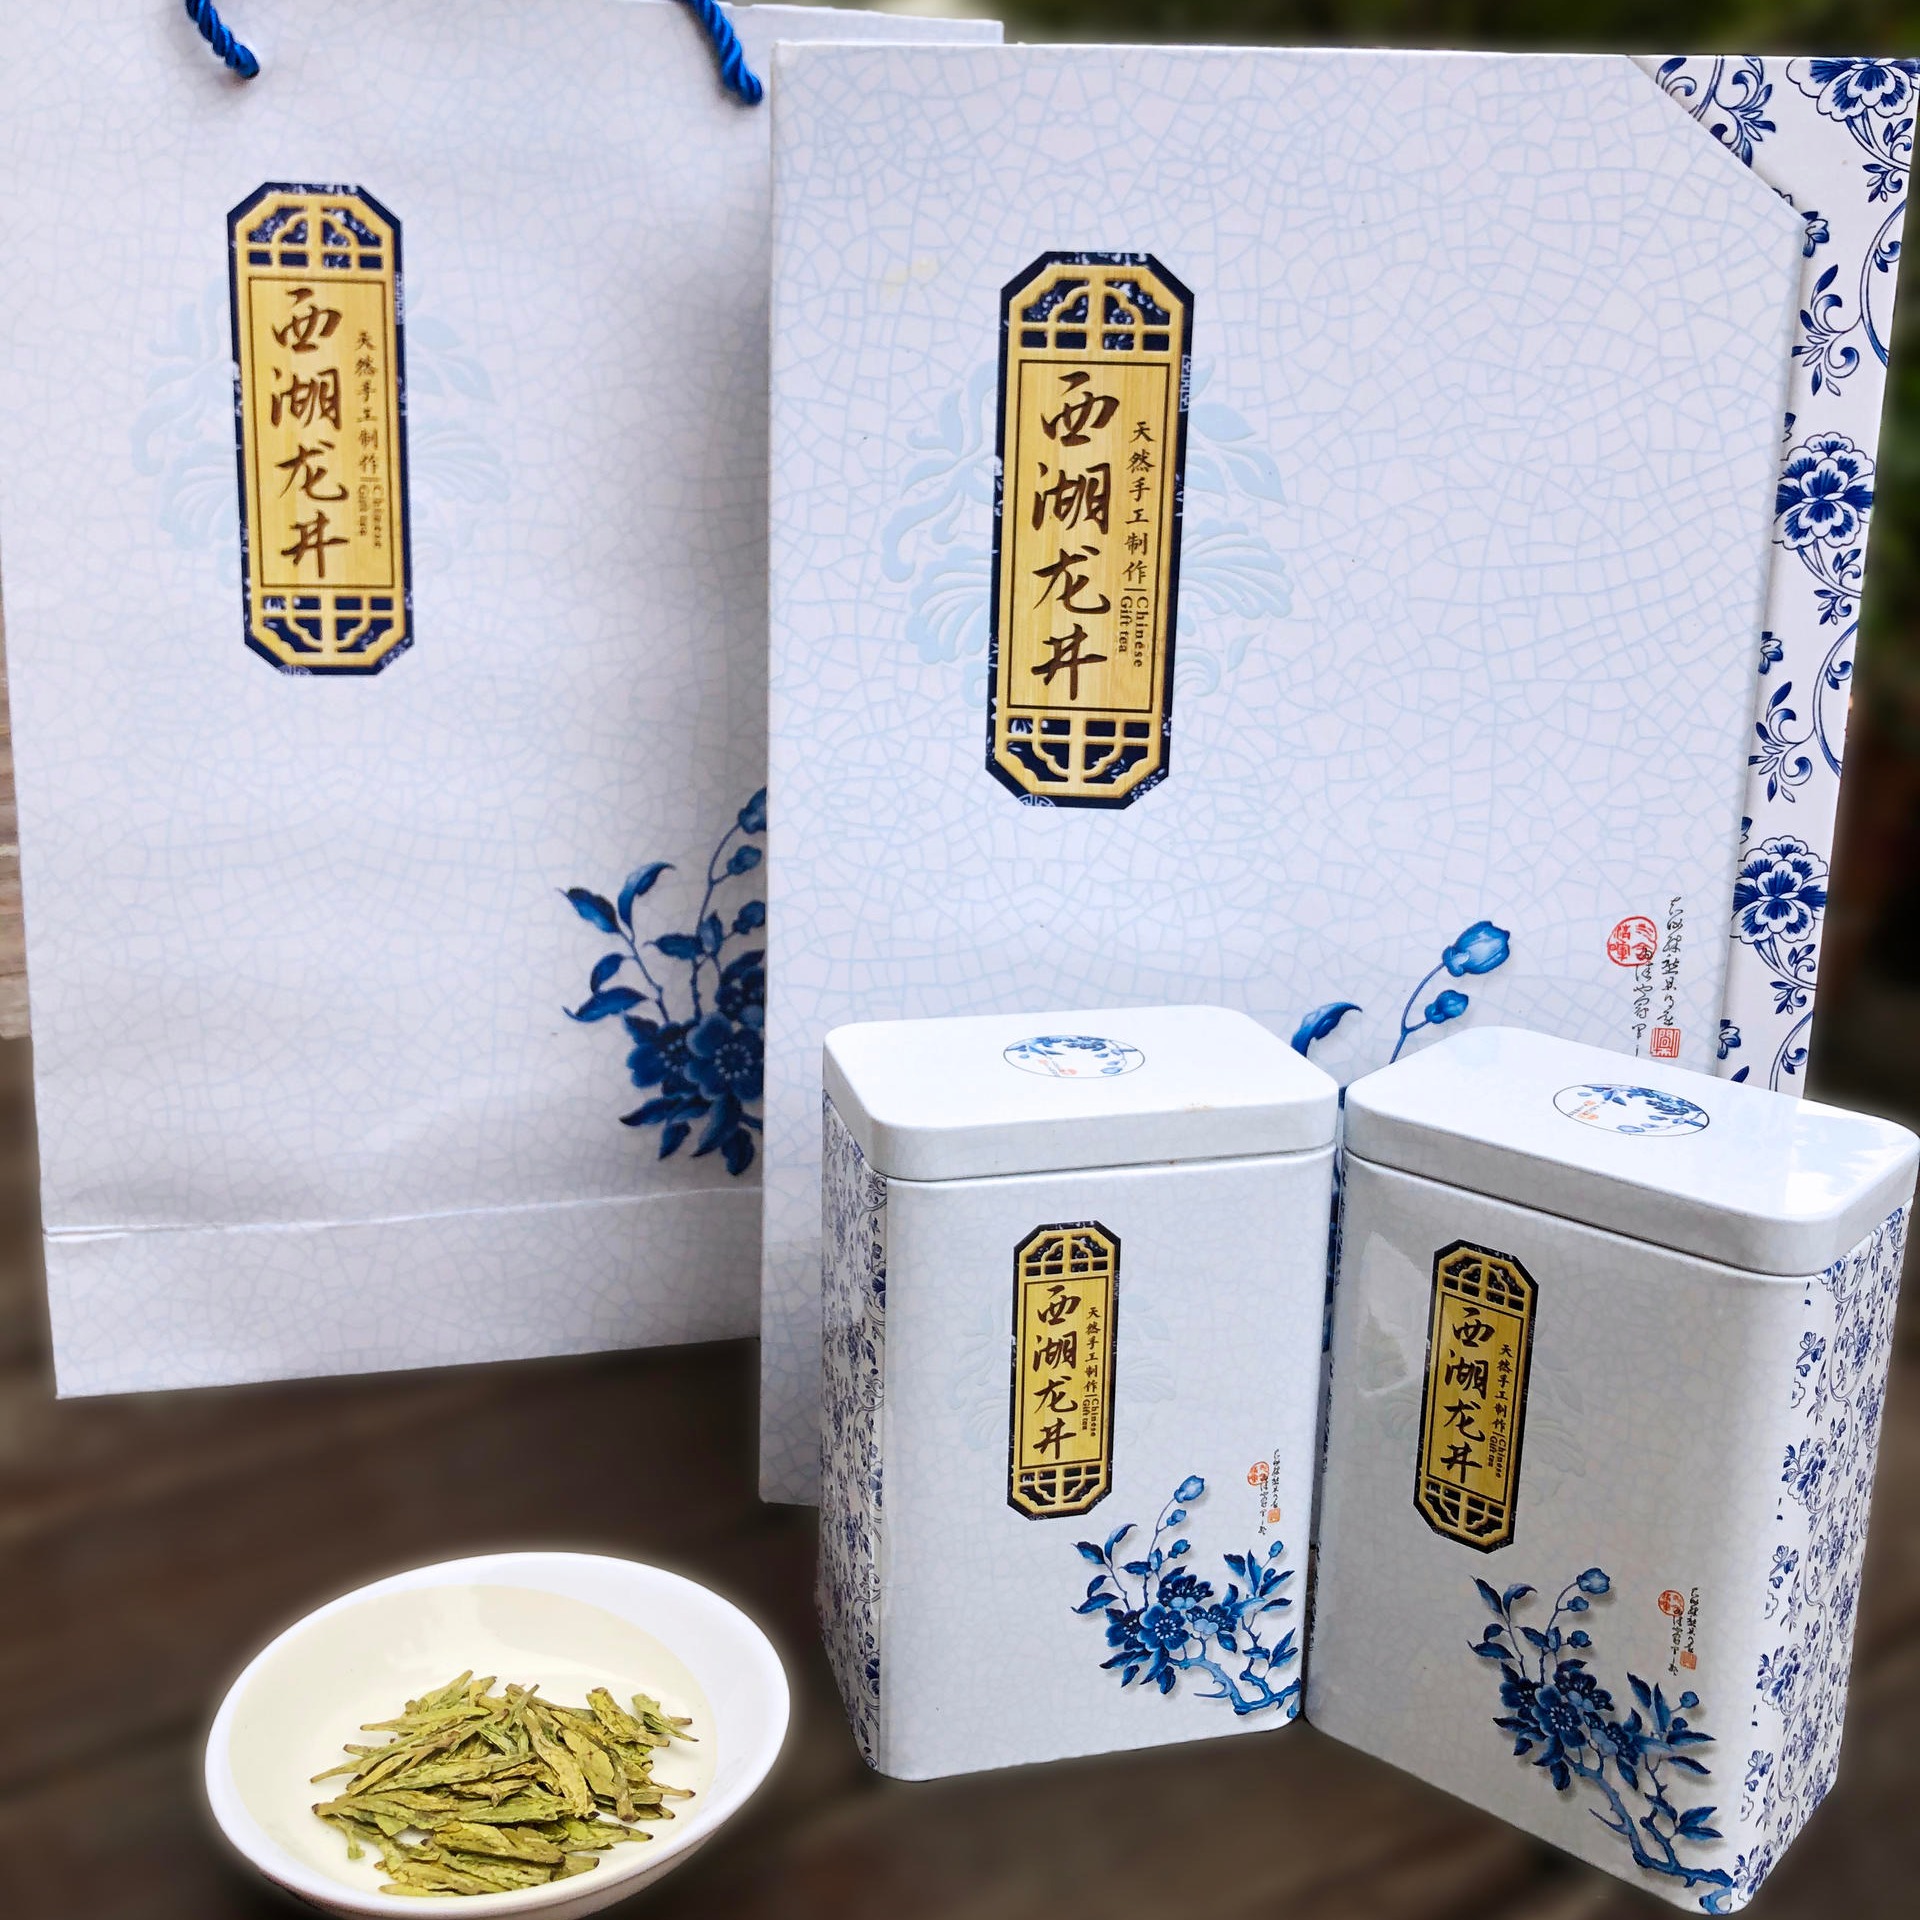 2021年新茶 正宗明前特级茶叶 雨前龙井礼盒装 西湖龙井 送礼长辈 绿茶